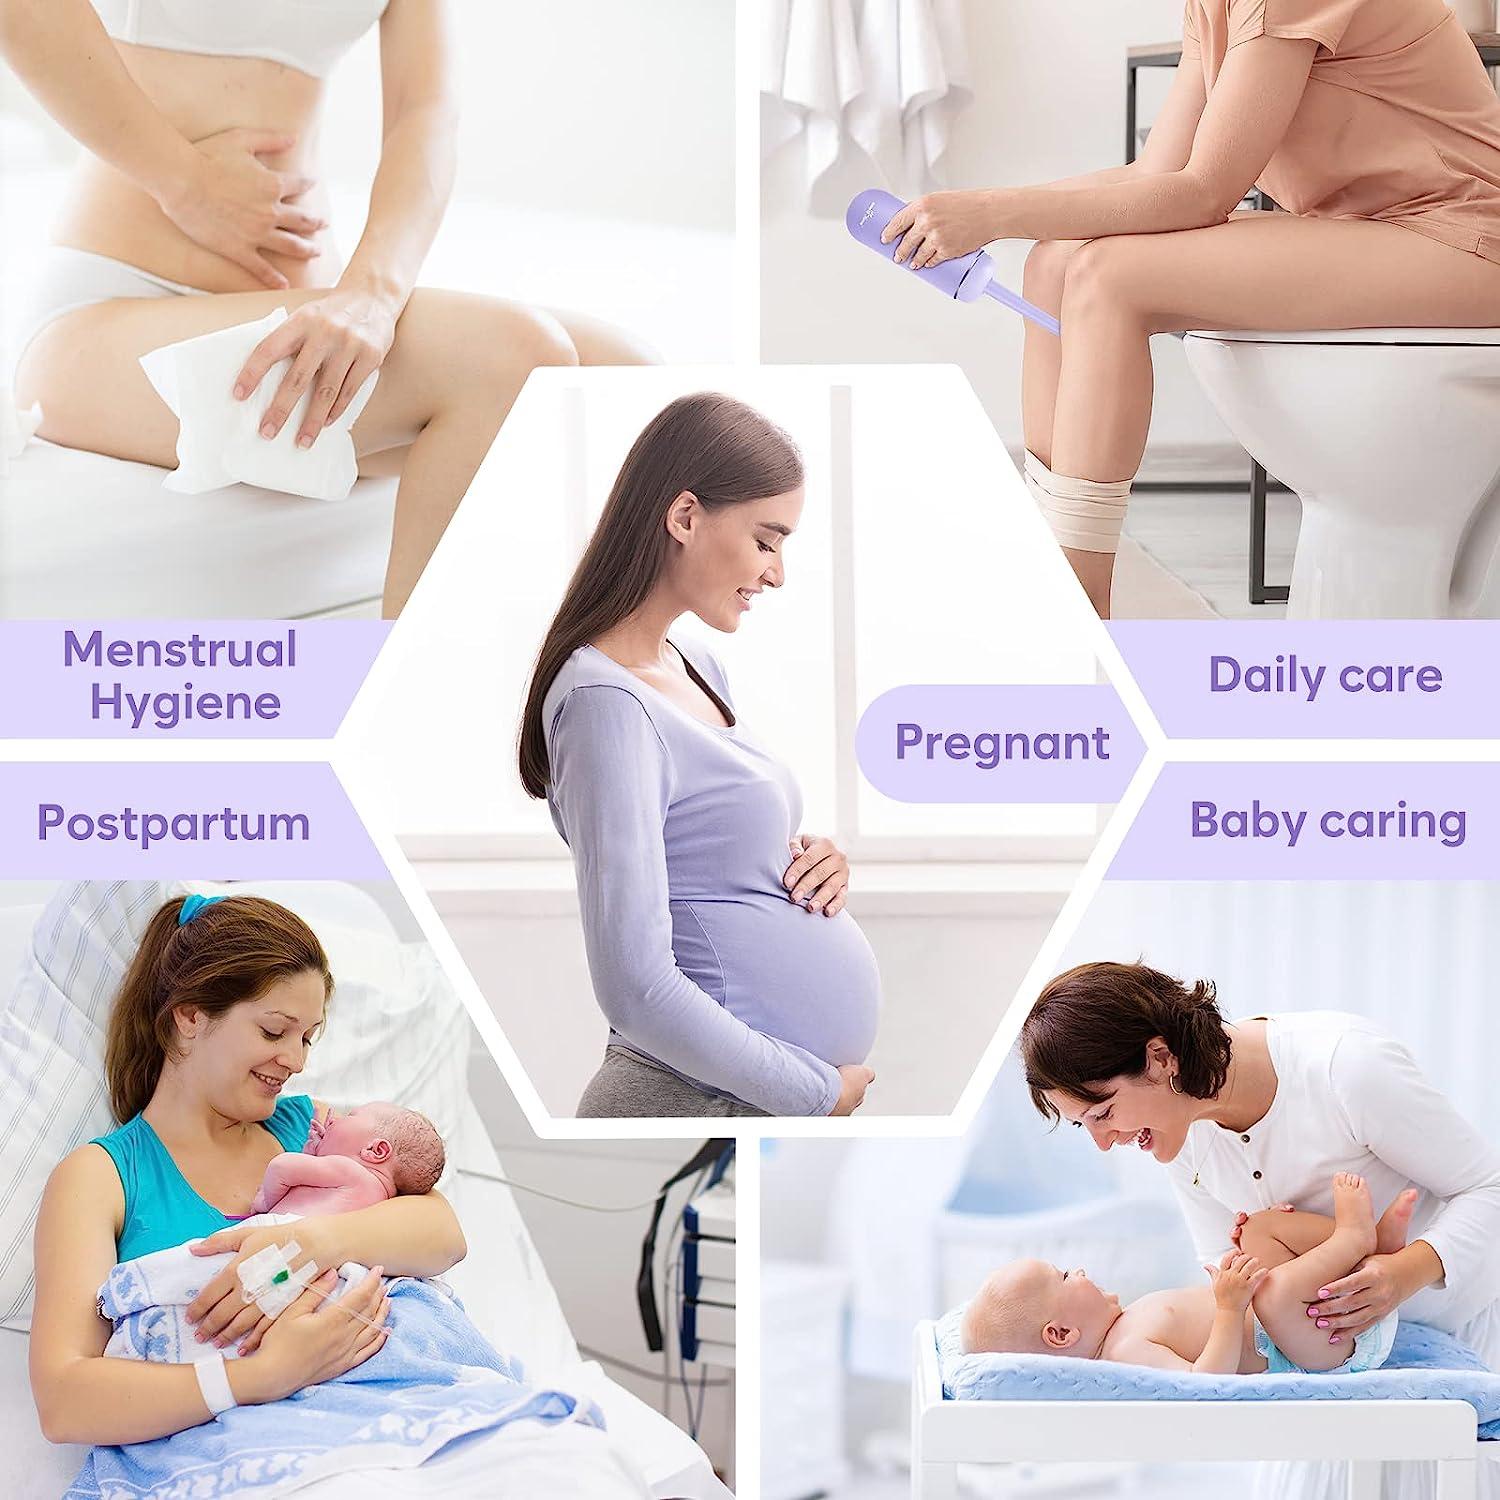 Baby Showers Mom Peri Bottle For Postpartum Essentials Soins féminins Maman  Laveuse pour la récupération périnéale Nettoyage après la naissance  Raoliang